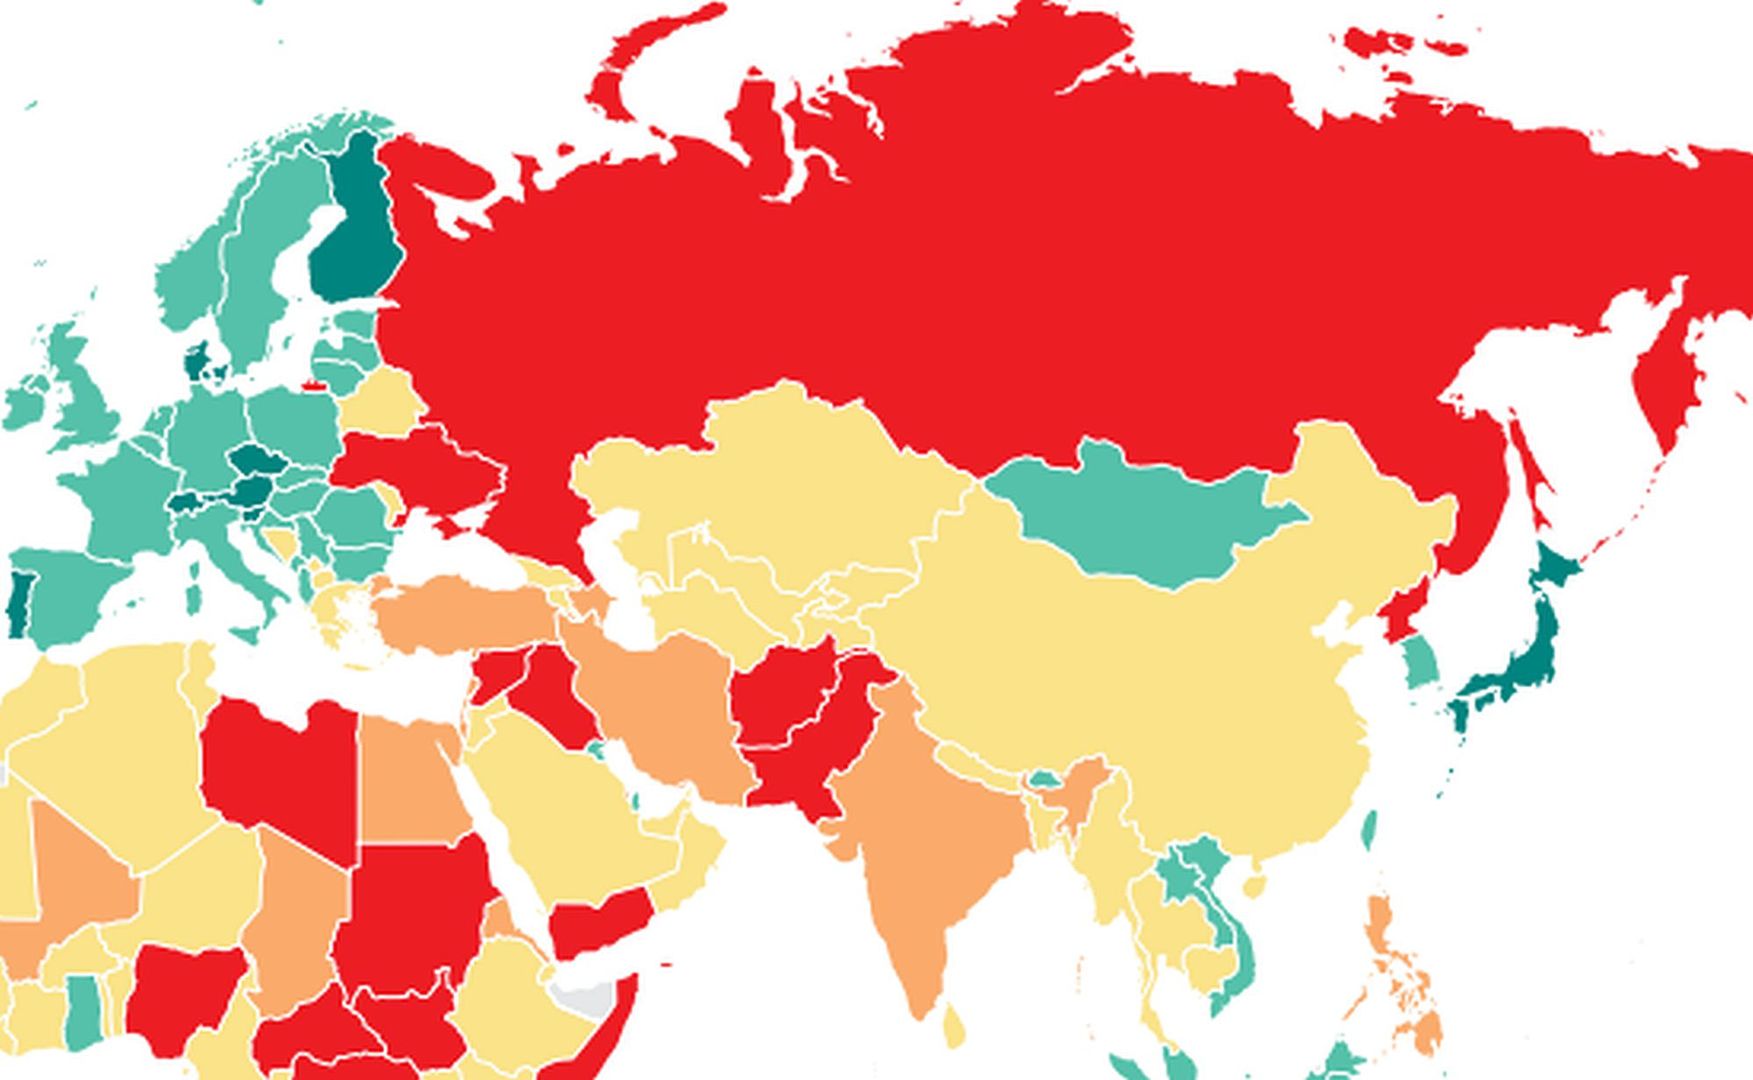 Najbezpieczniejsze kraje świata. Polska wysoko w rankingu